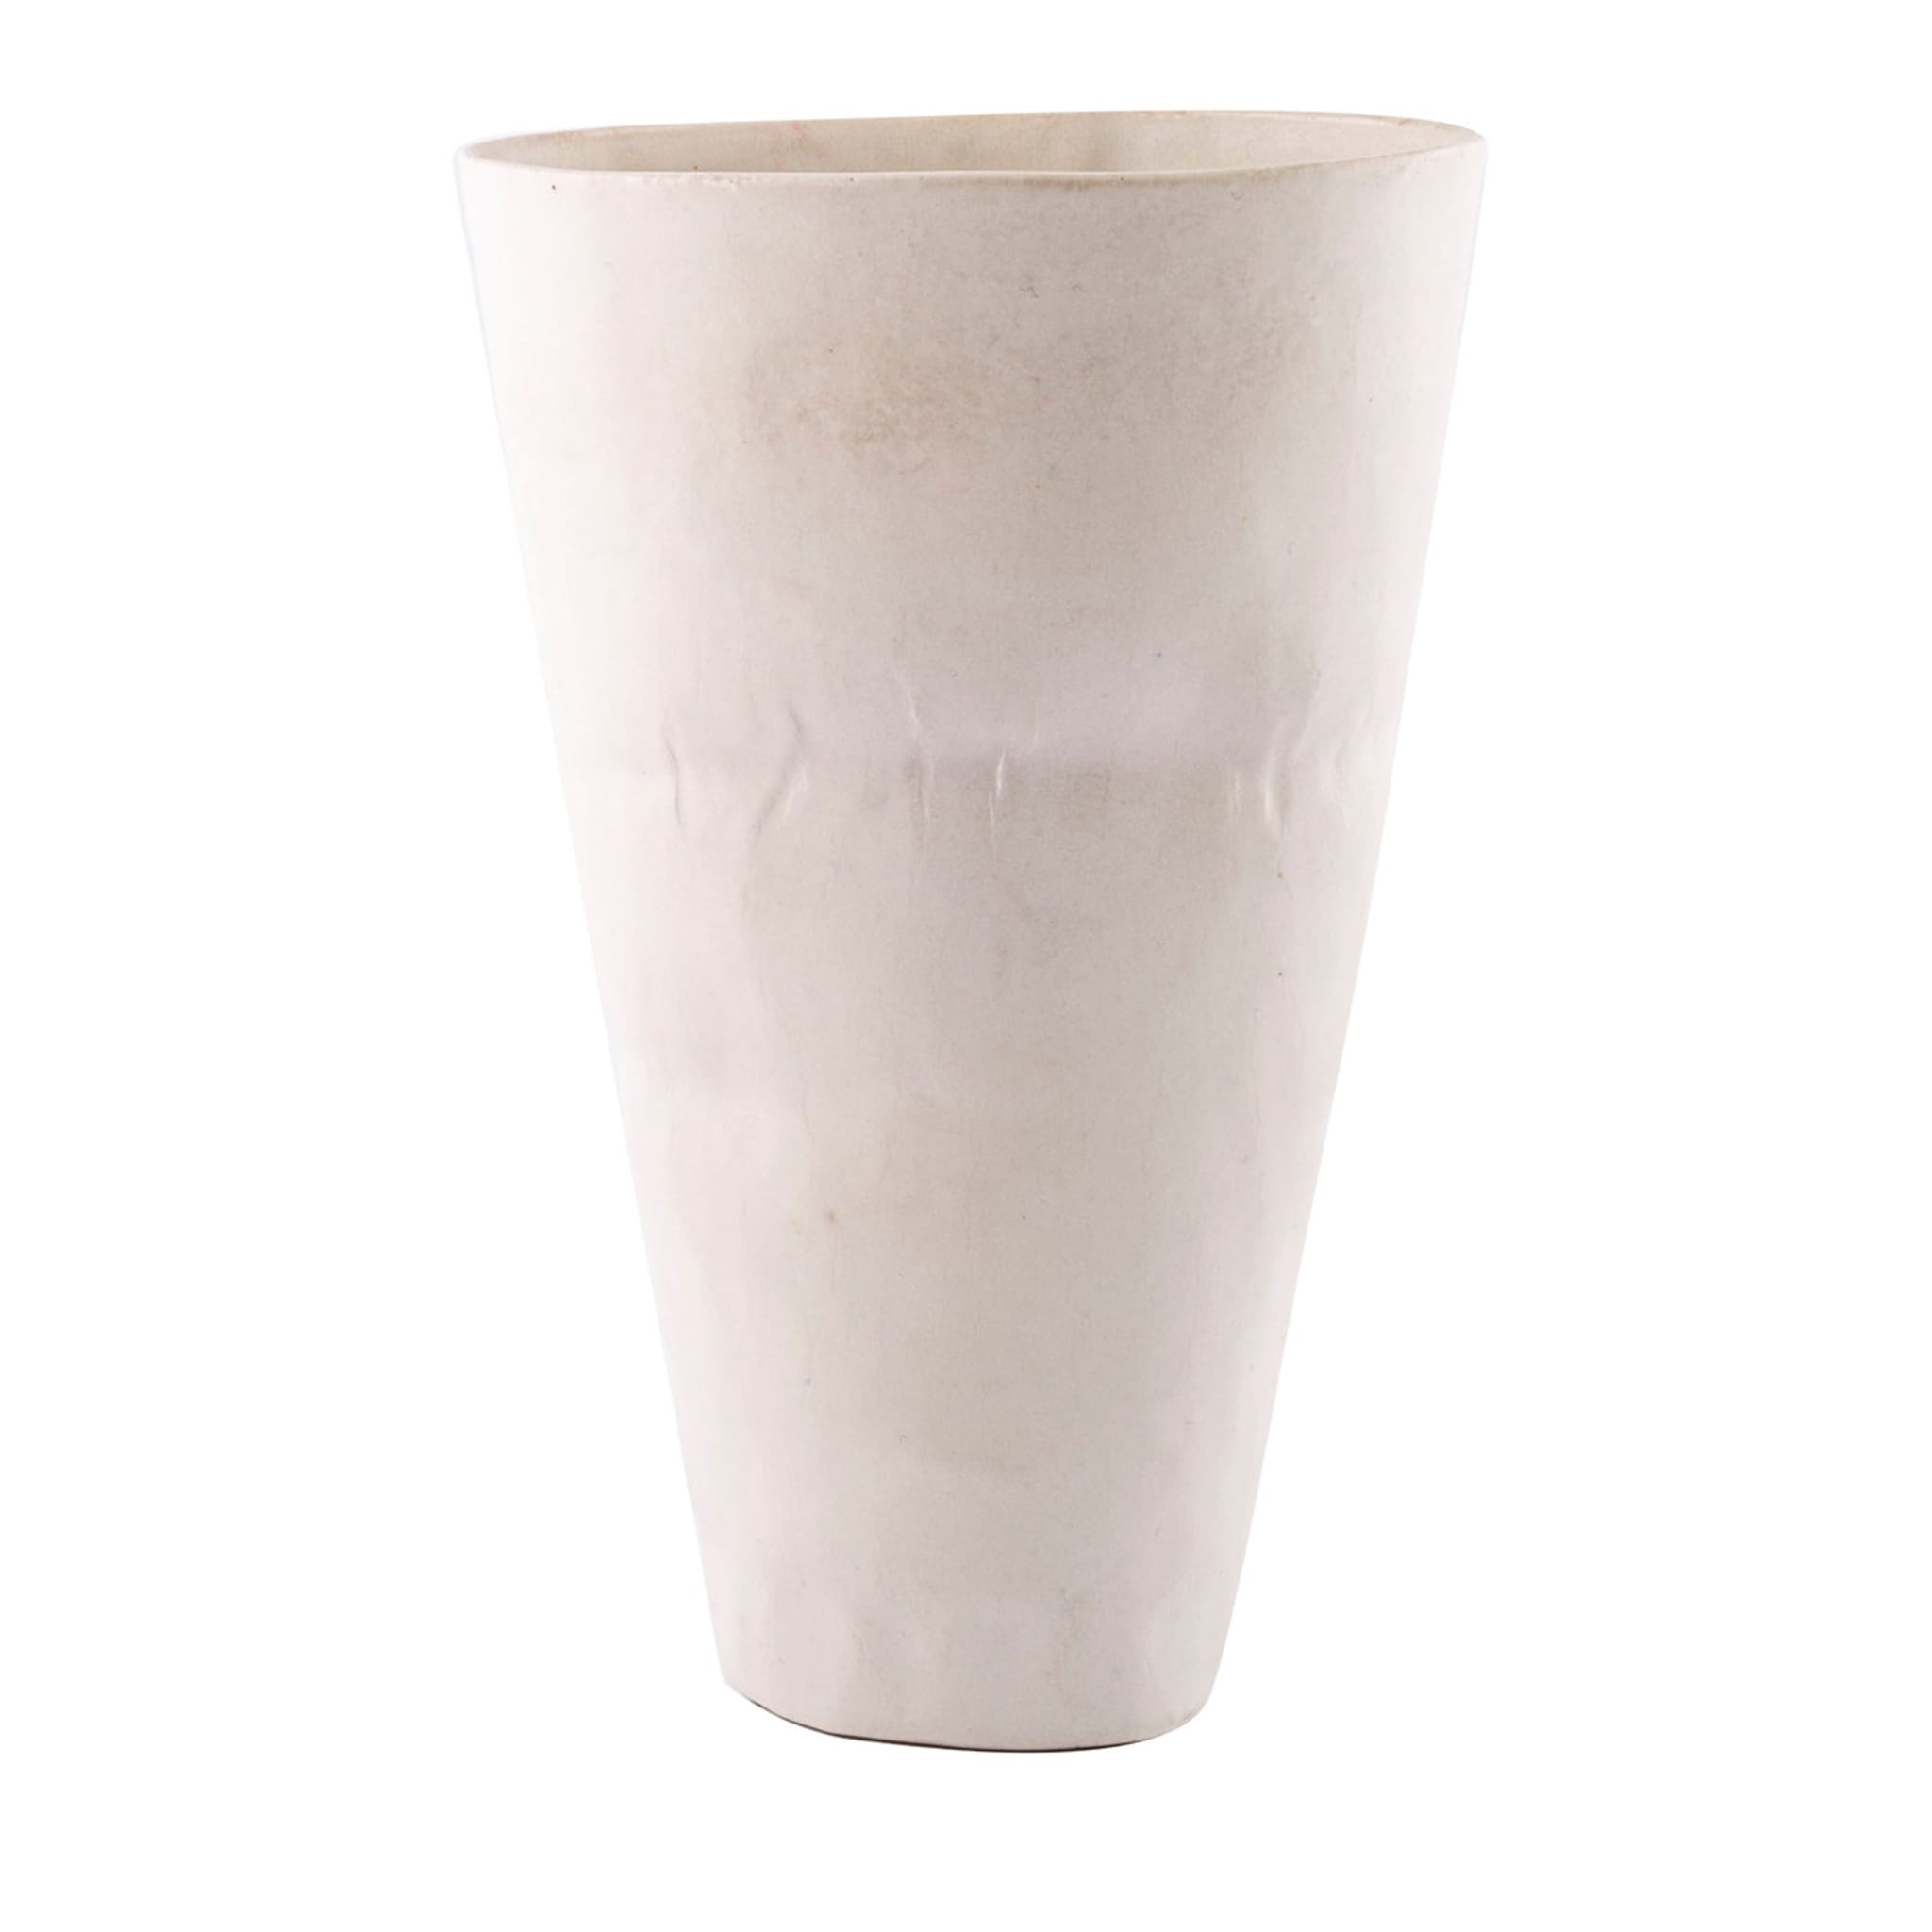 Vase blanc #1 - Vue principale